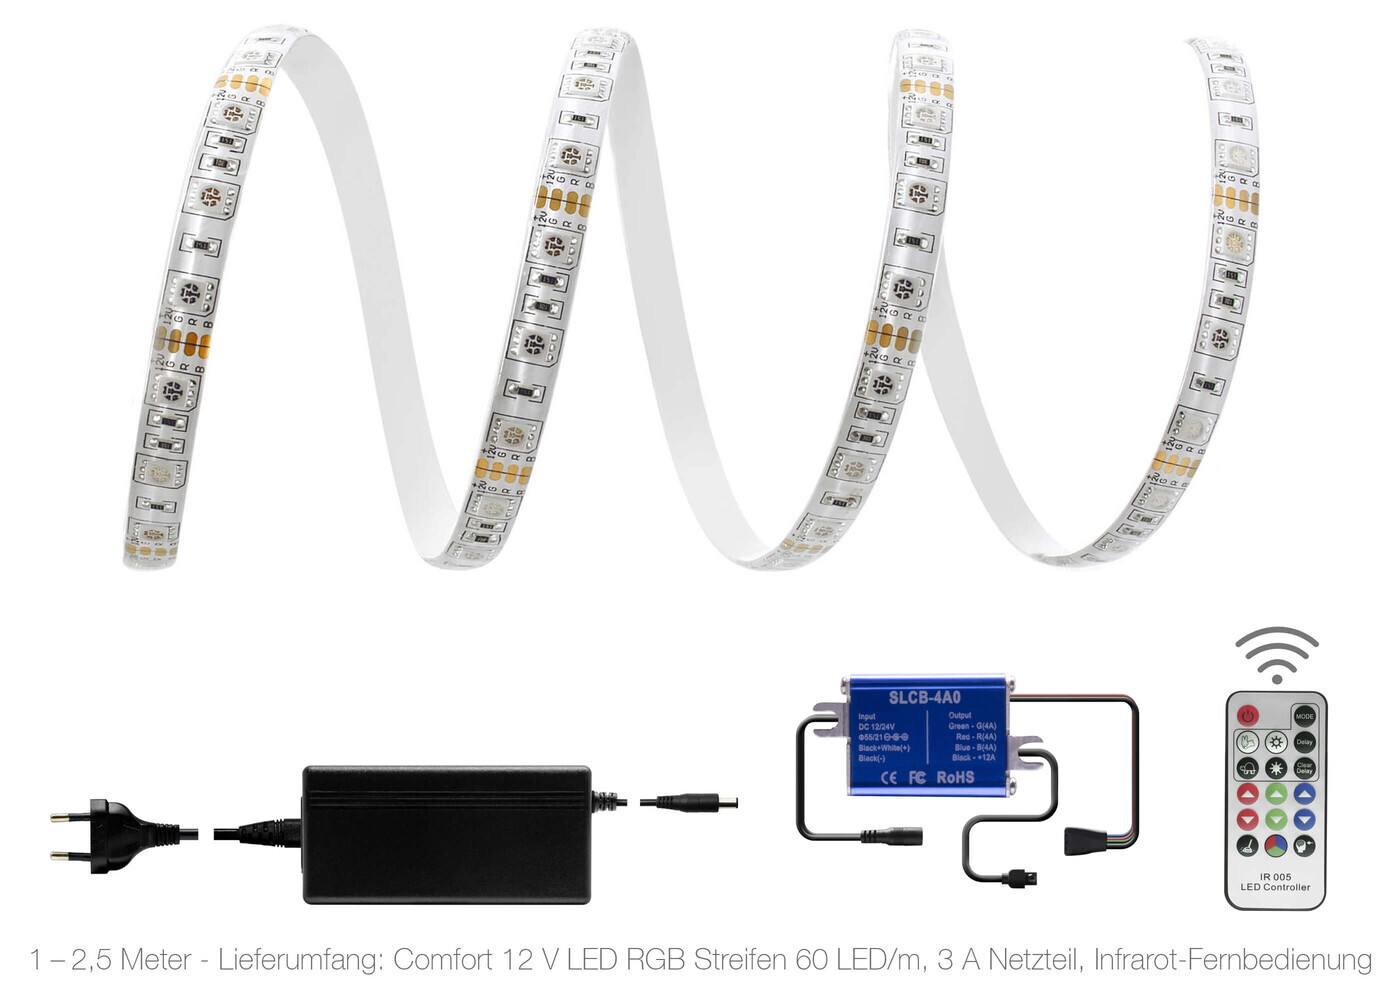 hochwertiger, farbenfroher LED Streifen von LED Universum